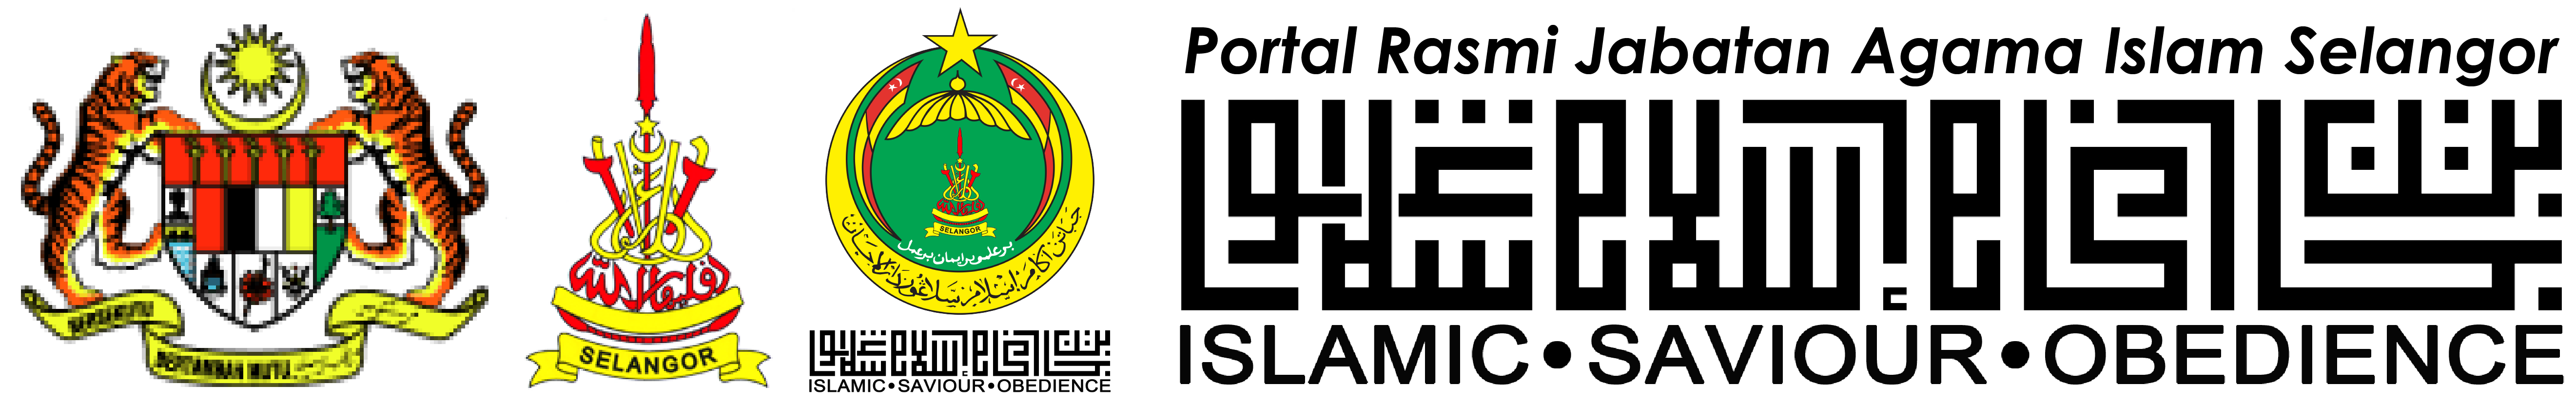 Portal Rasmi Jabatan Agama Islam Selangor